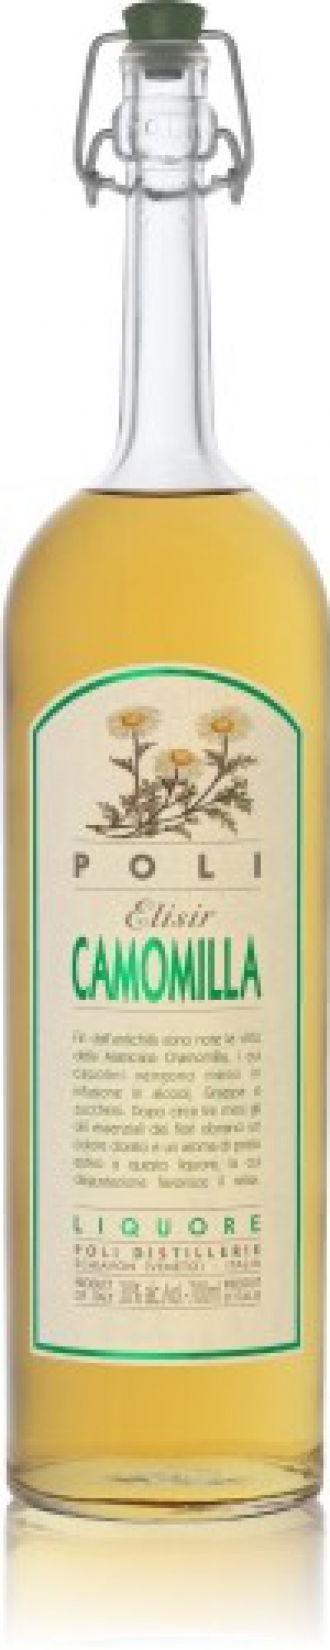 Liquore camomilla infuso di grappa poli cl.70